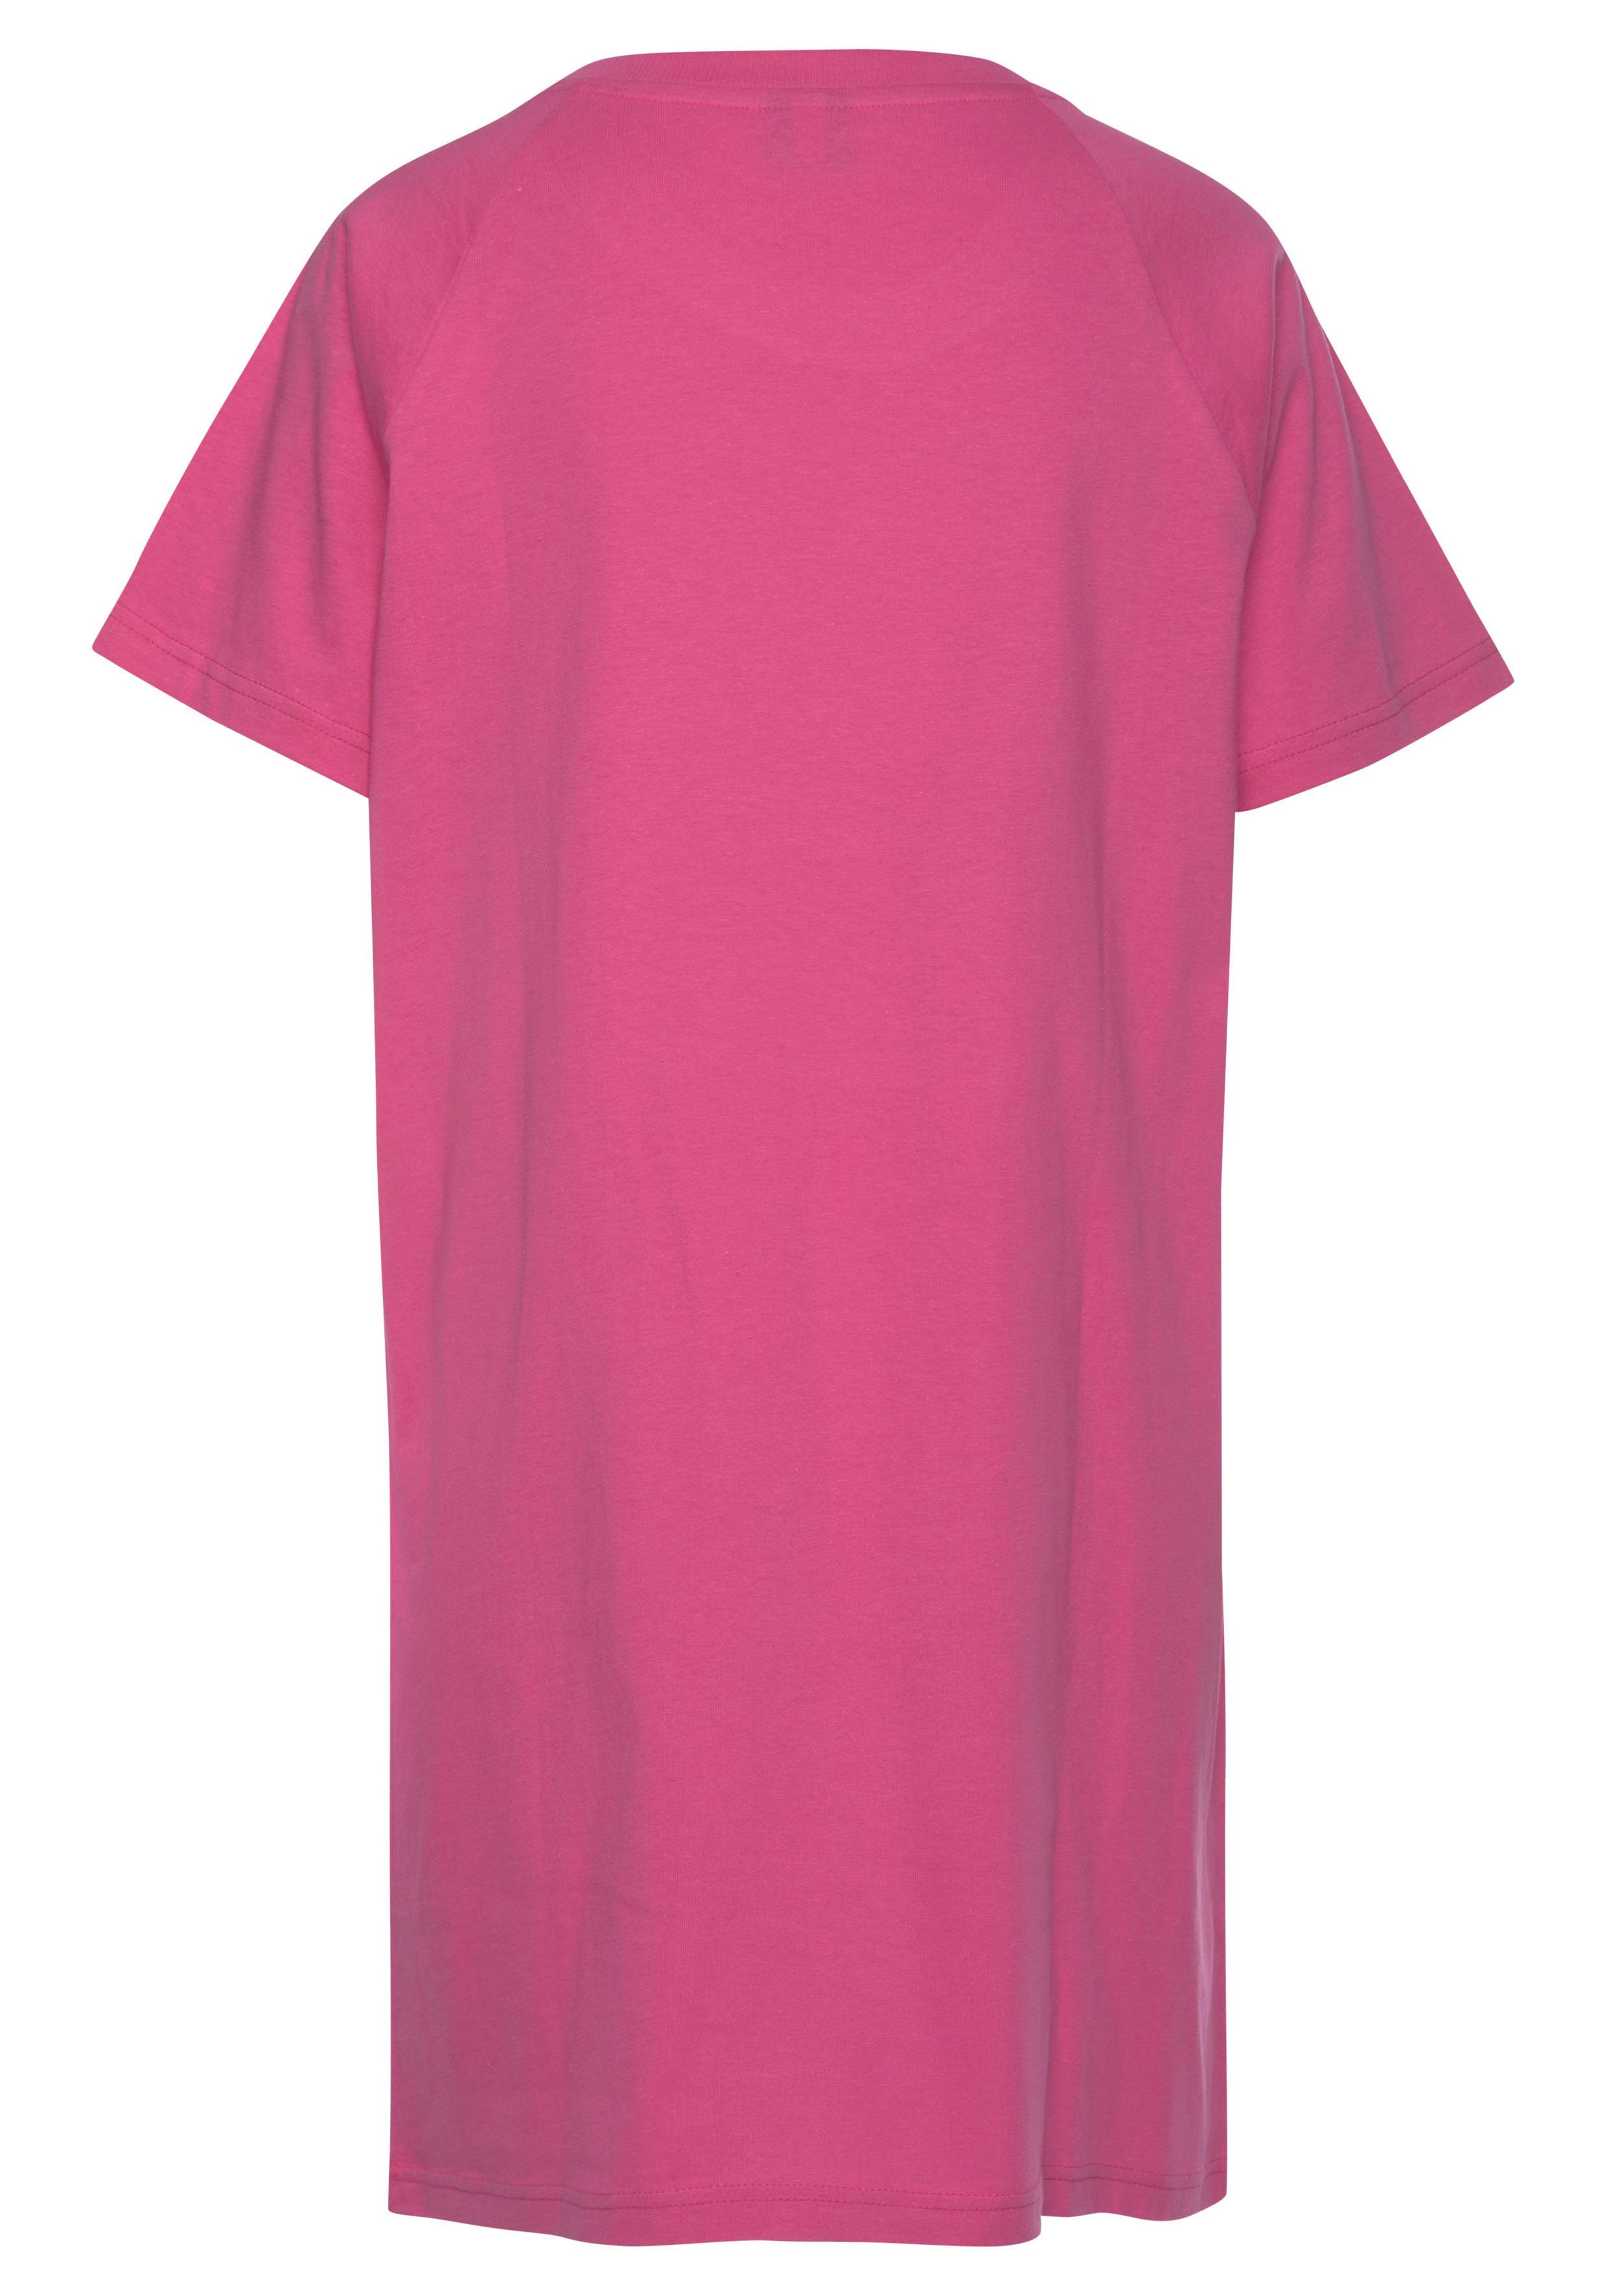 Bigshirt KangaROOS pink mit Slogan-Frontdruck